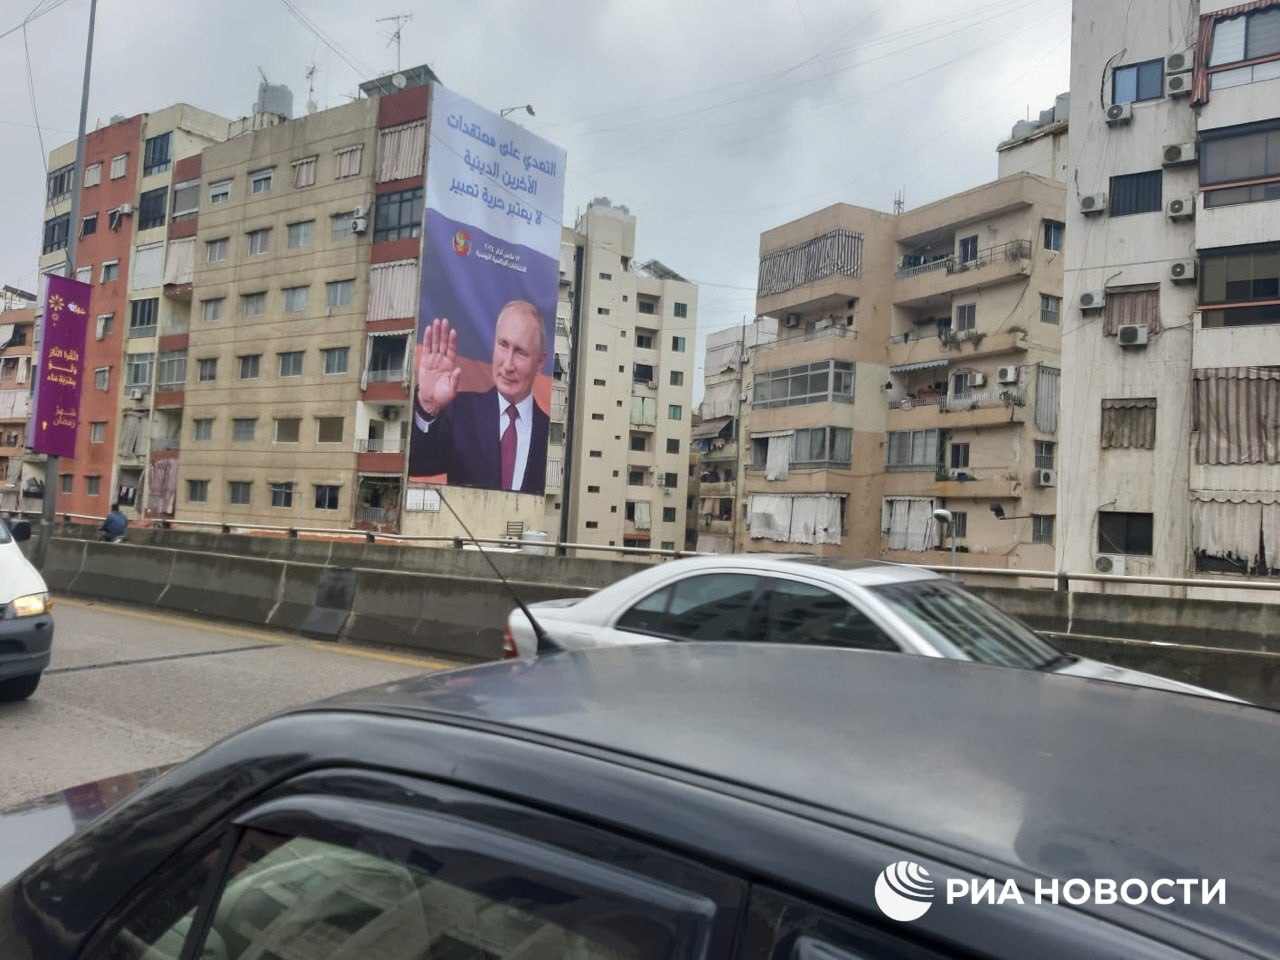 مقولة شهيرة لبوتين وصورته والعلم الروسي تتصدر لافتات في ضاحية العاصمة بيروت (صور+فيديو)